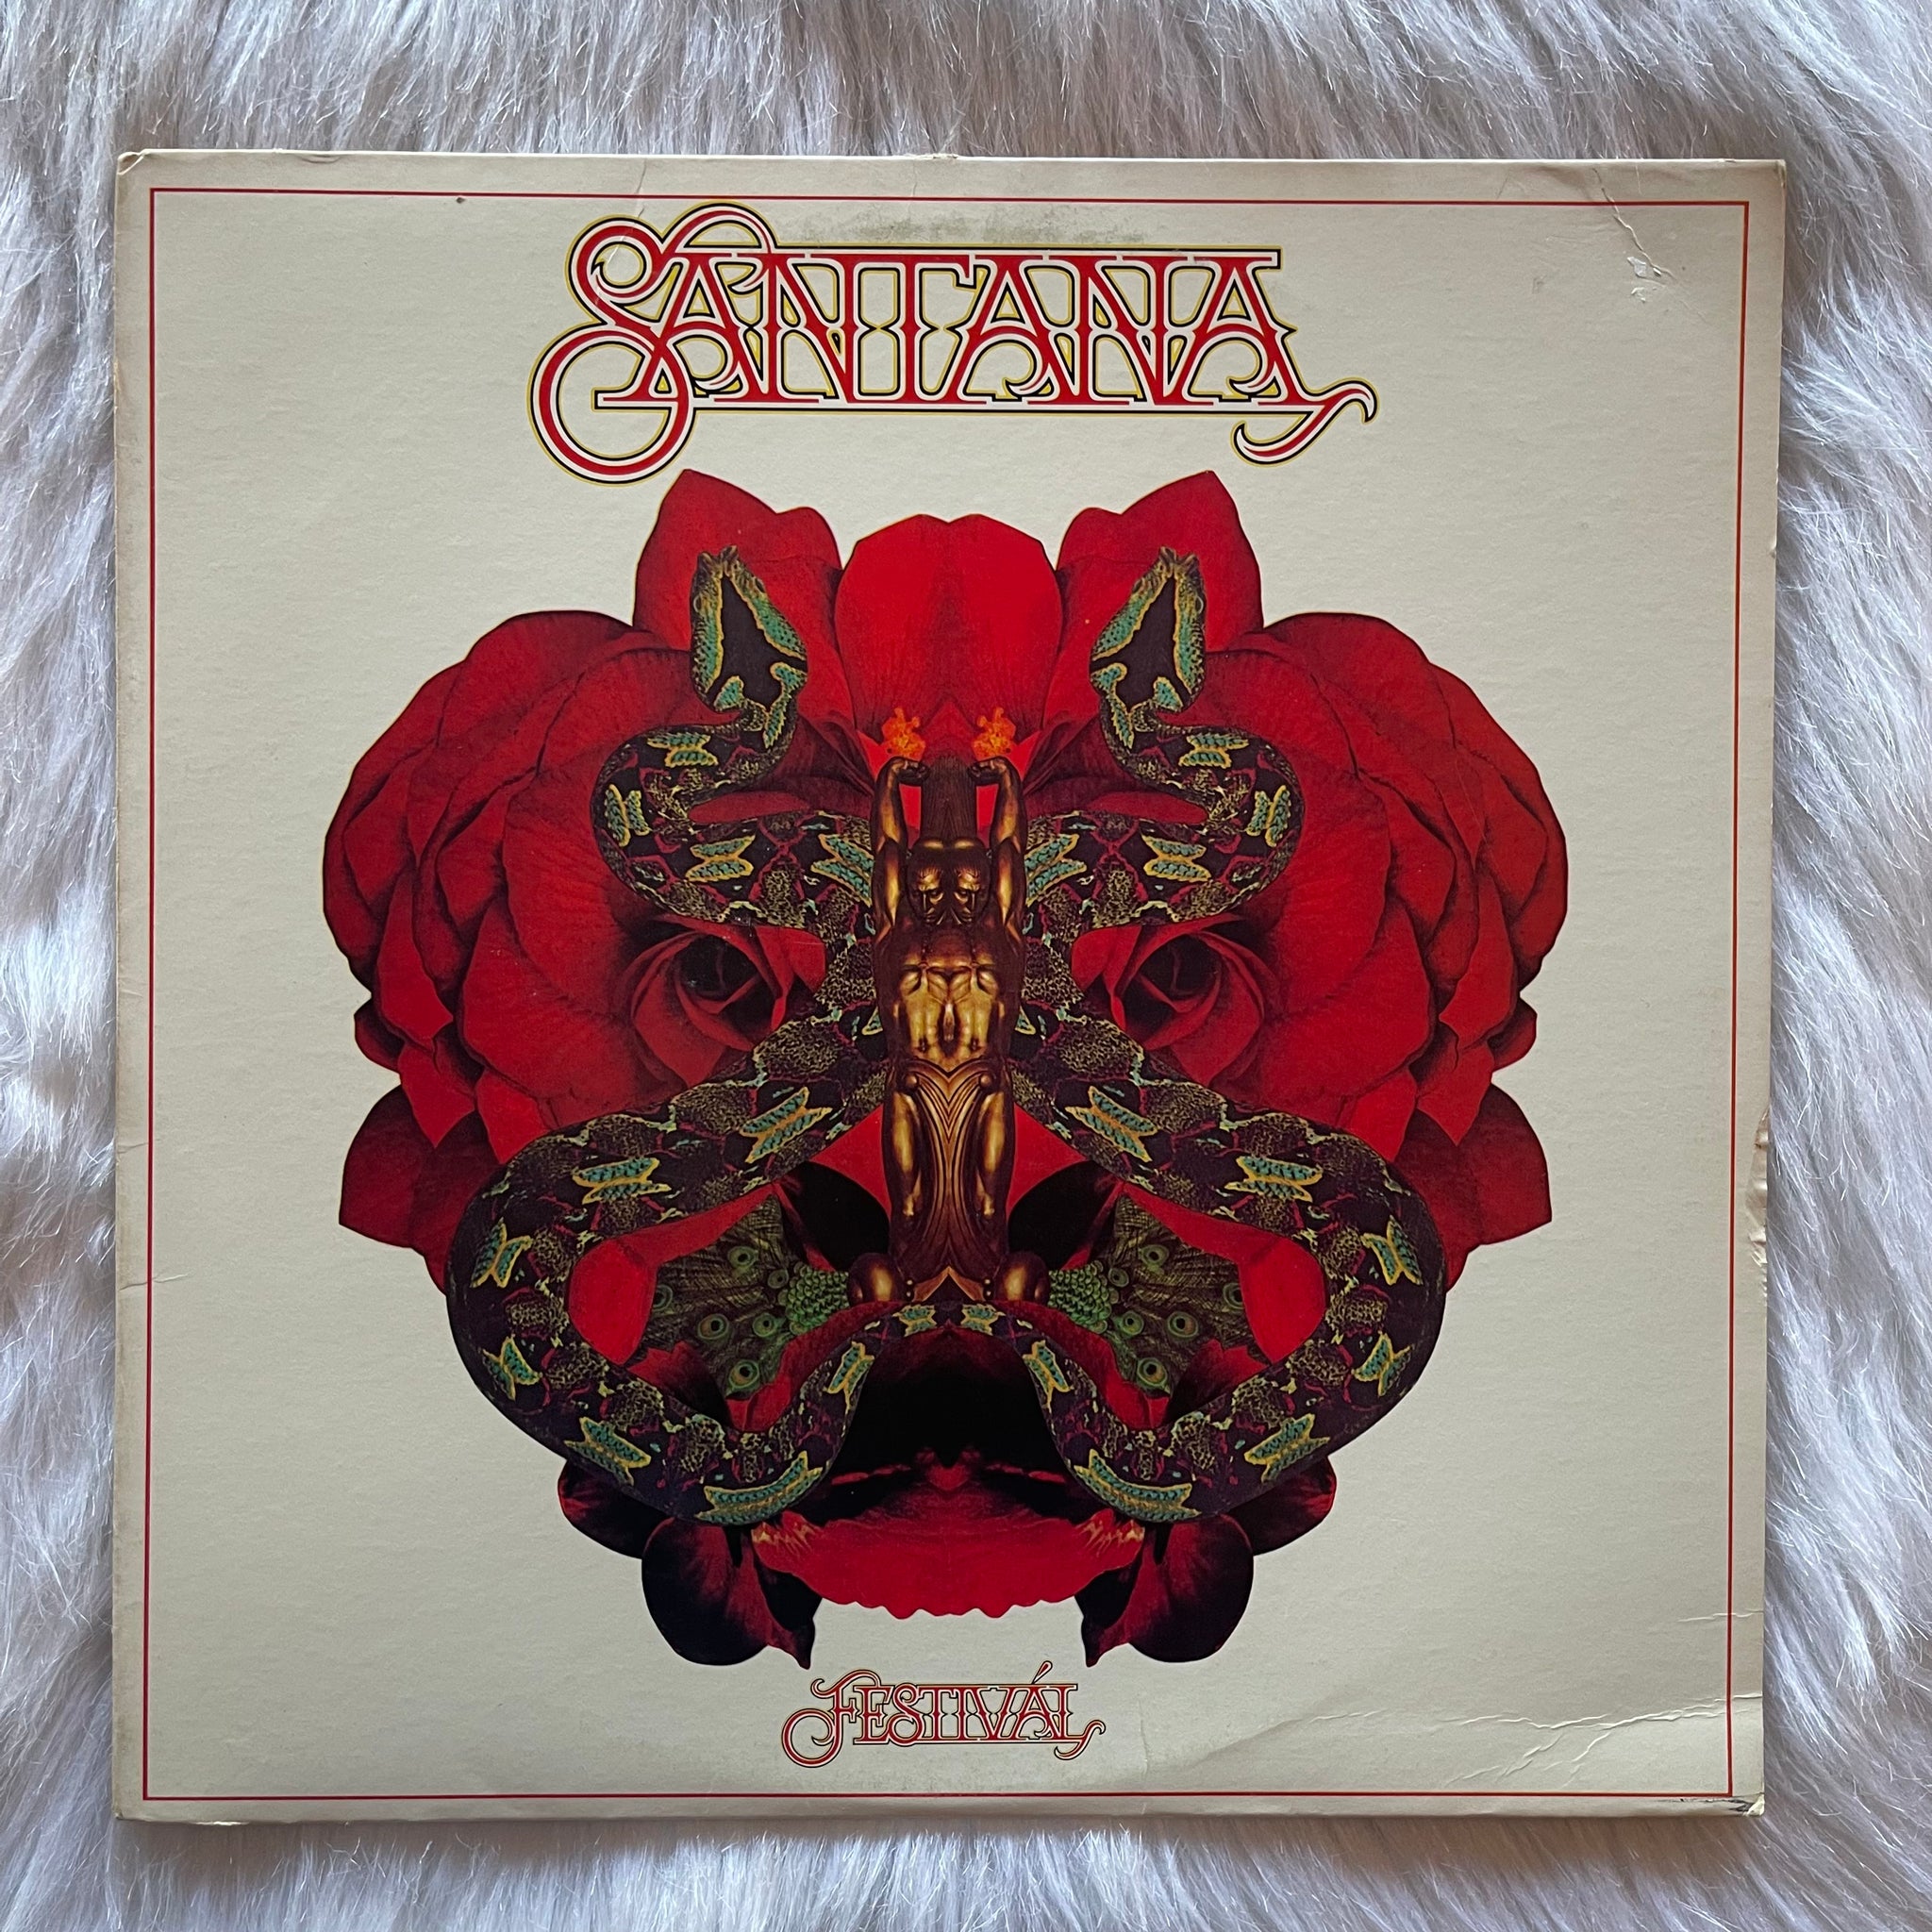 Santana-Festival